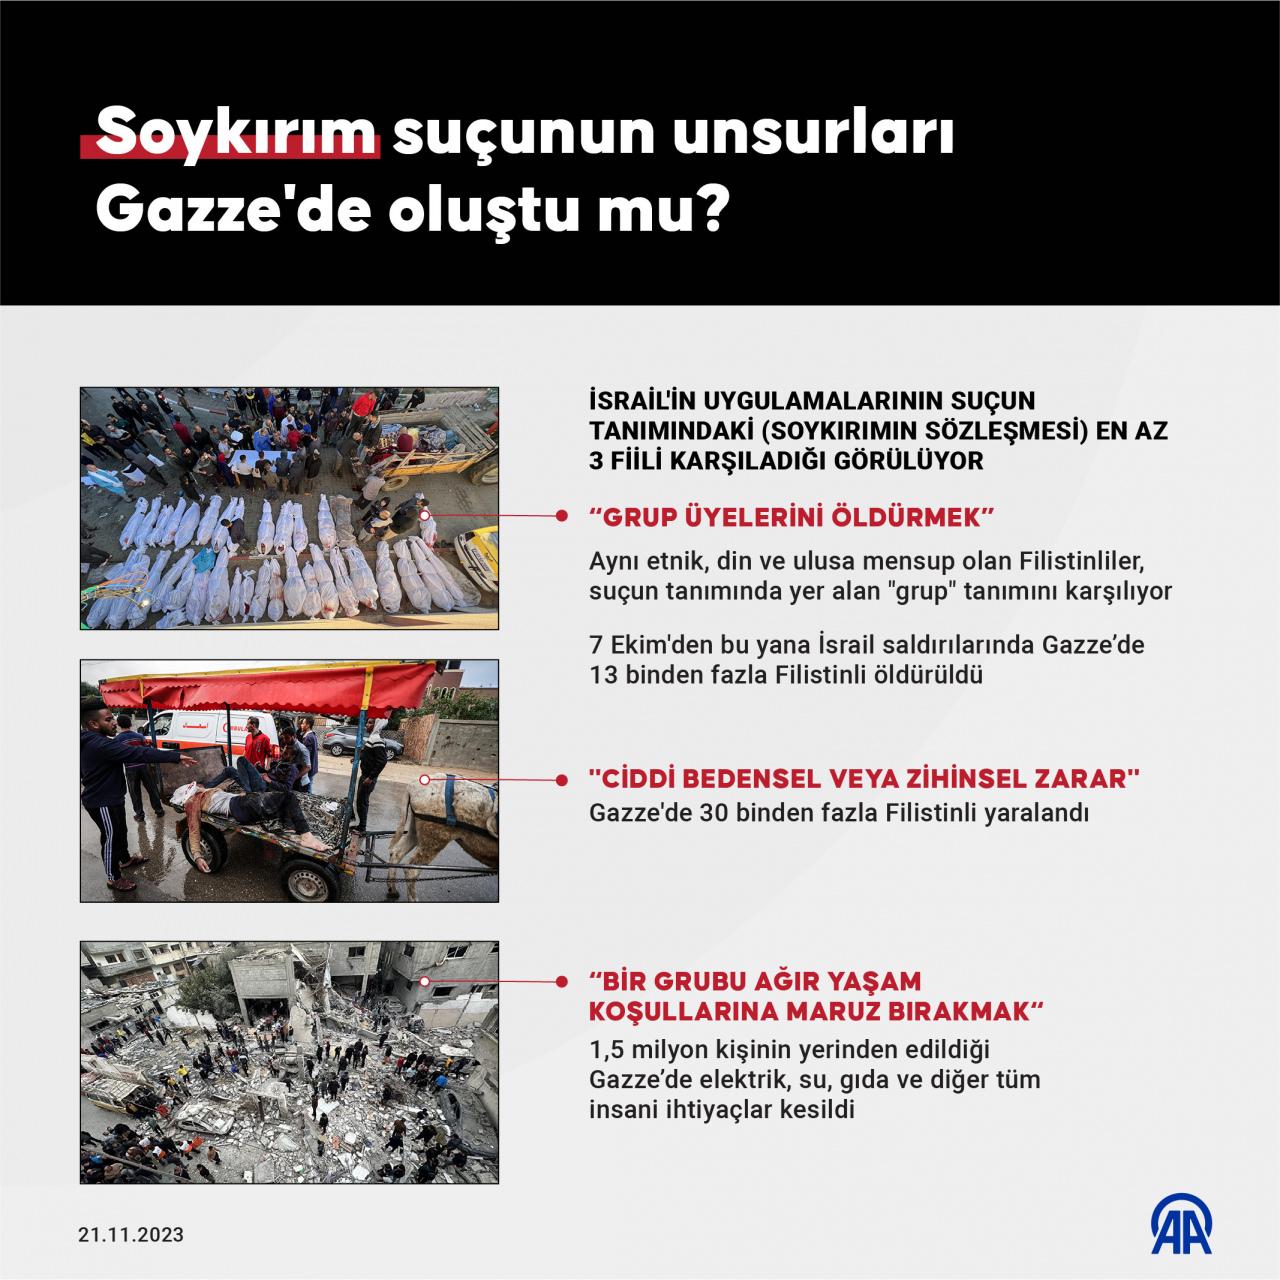 İstanbul 2 No'lu Barosundan İsrail'e karşı UCM girişimi